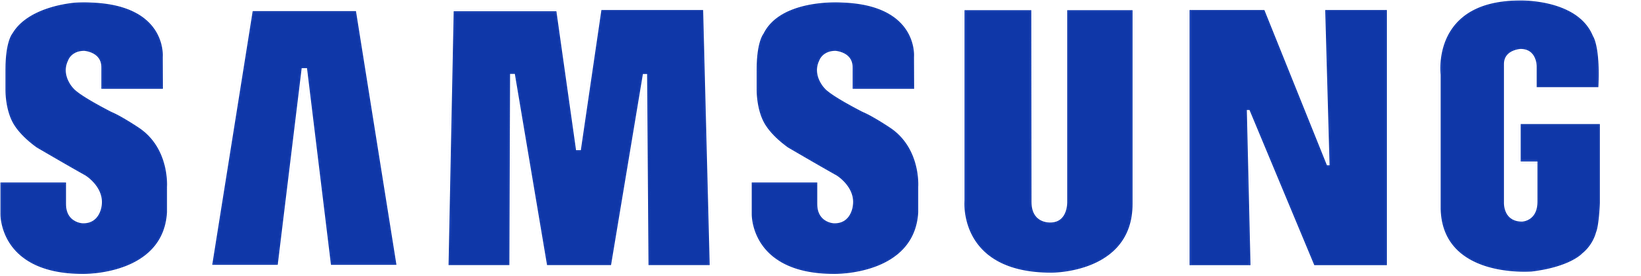 Samsung Logo Background PNG Image